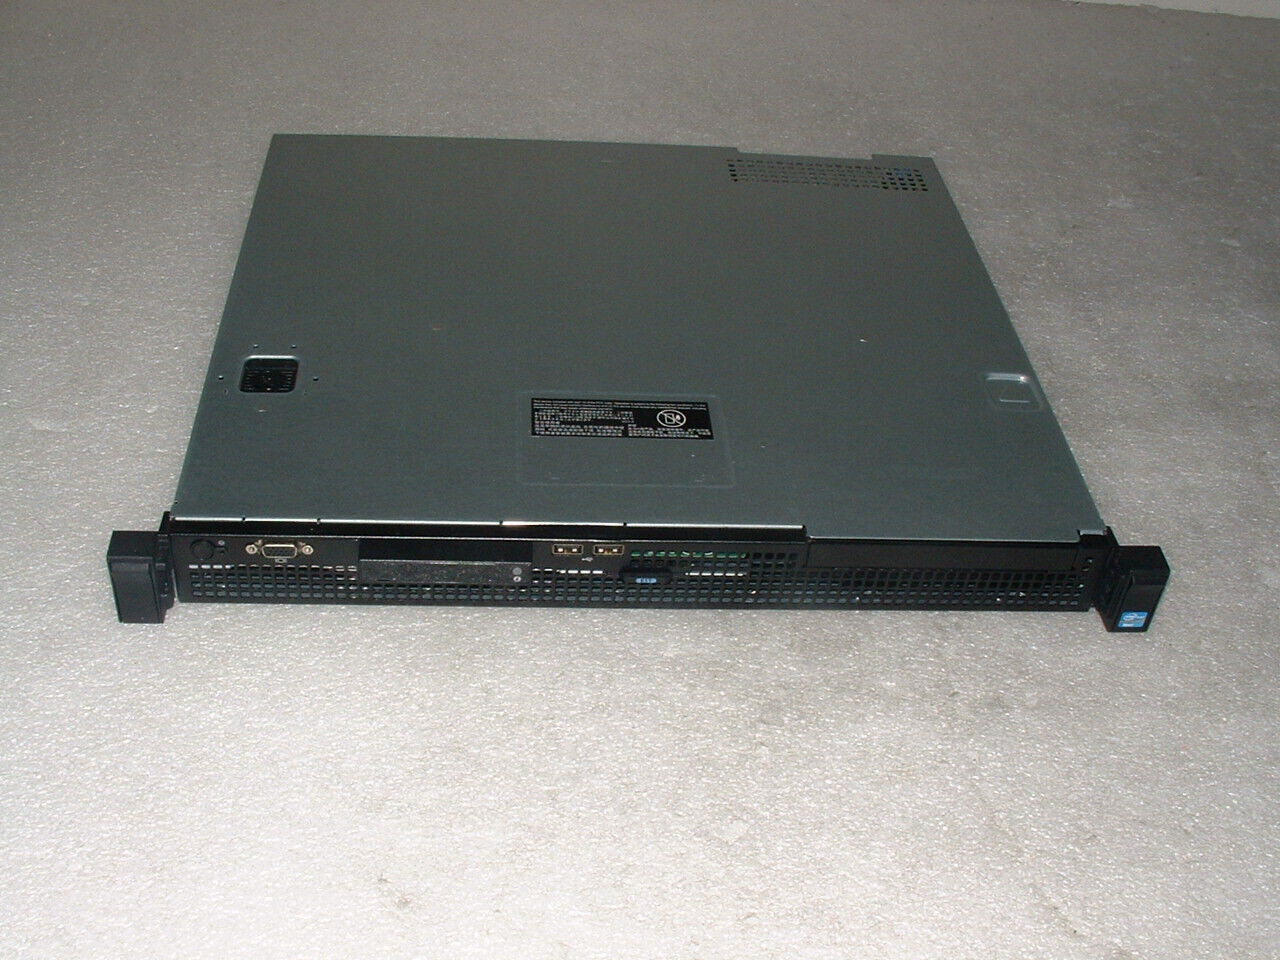 Dell Poweredge R210 II Server Xeon E3-1240 v2 3.4ghz Quad Core / 8gb / 1x Tray